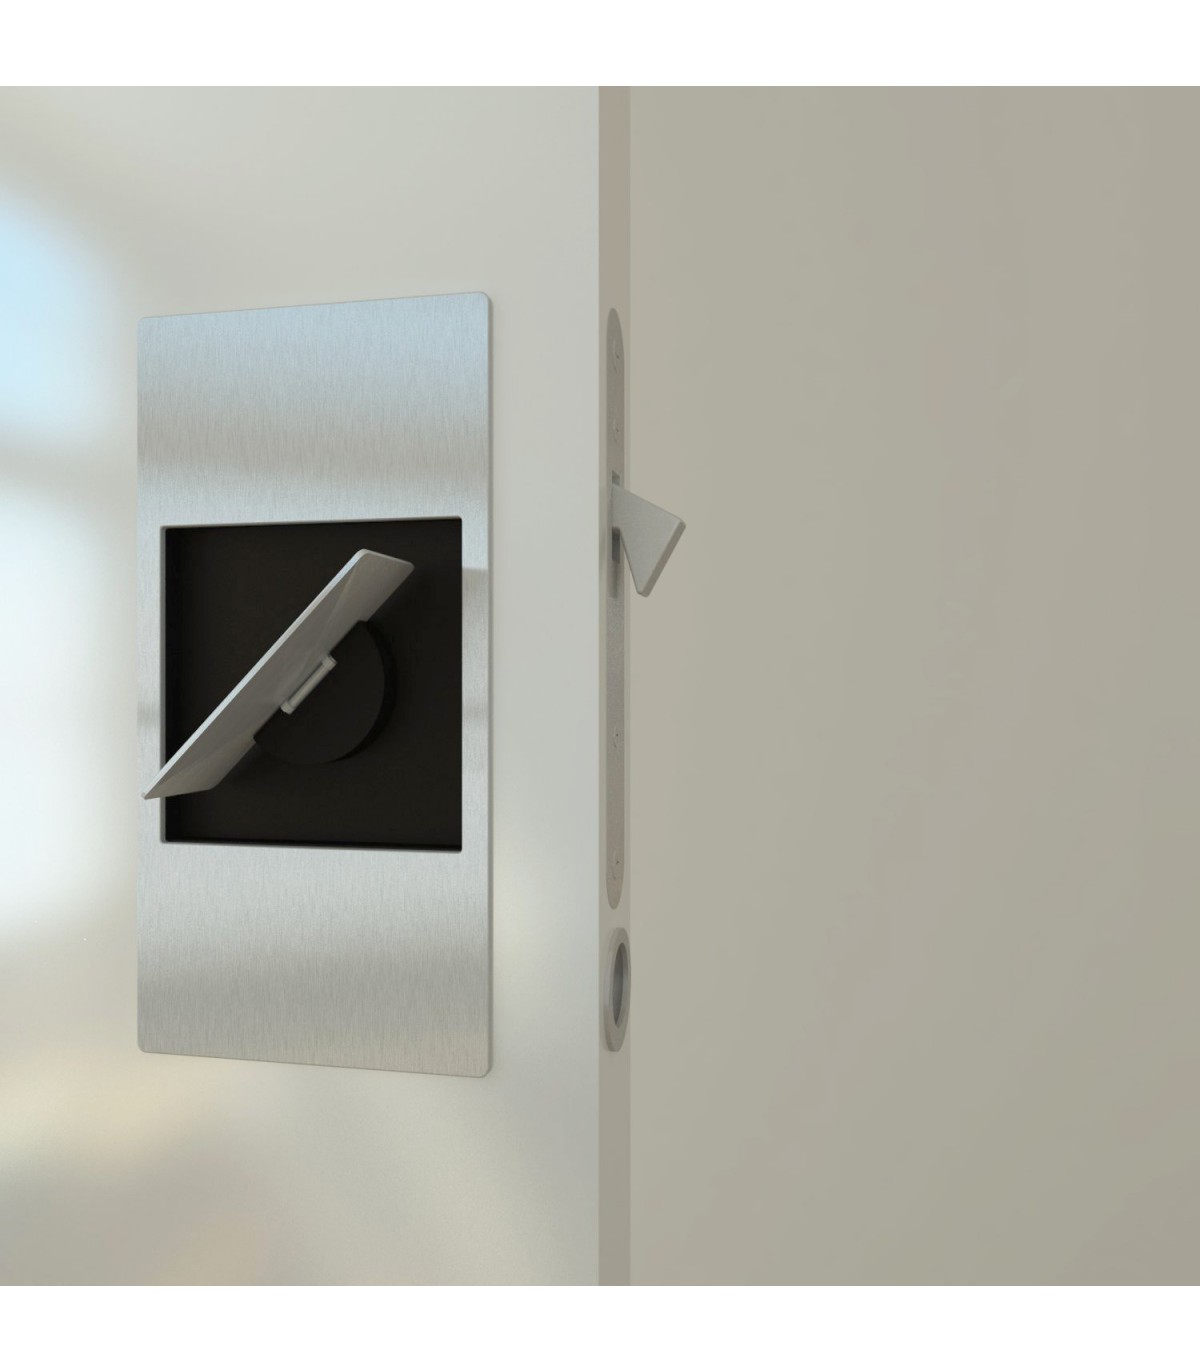 Slidelock un nouveau concept de poignée pour des portes à galandage.